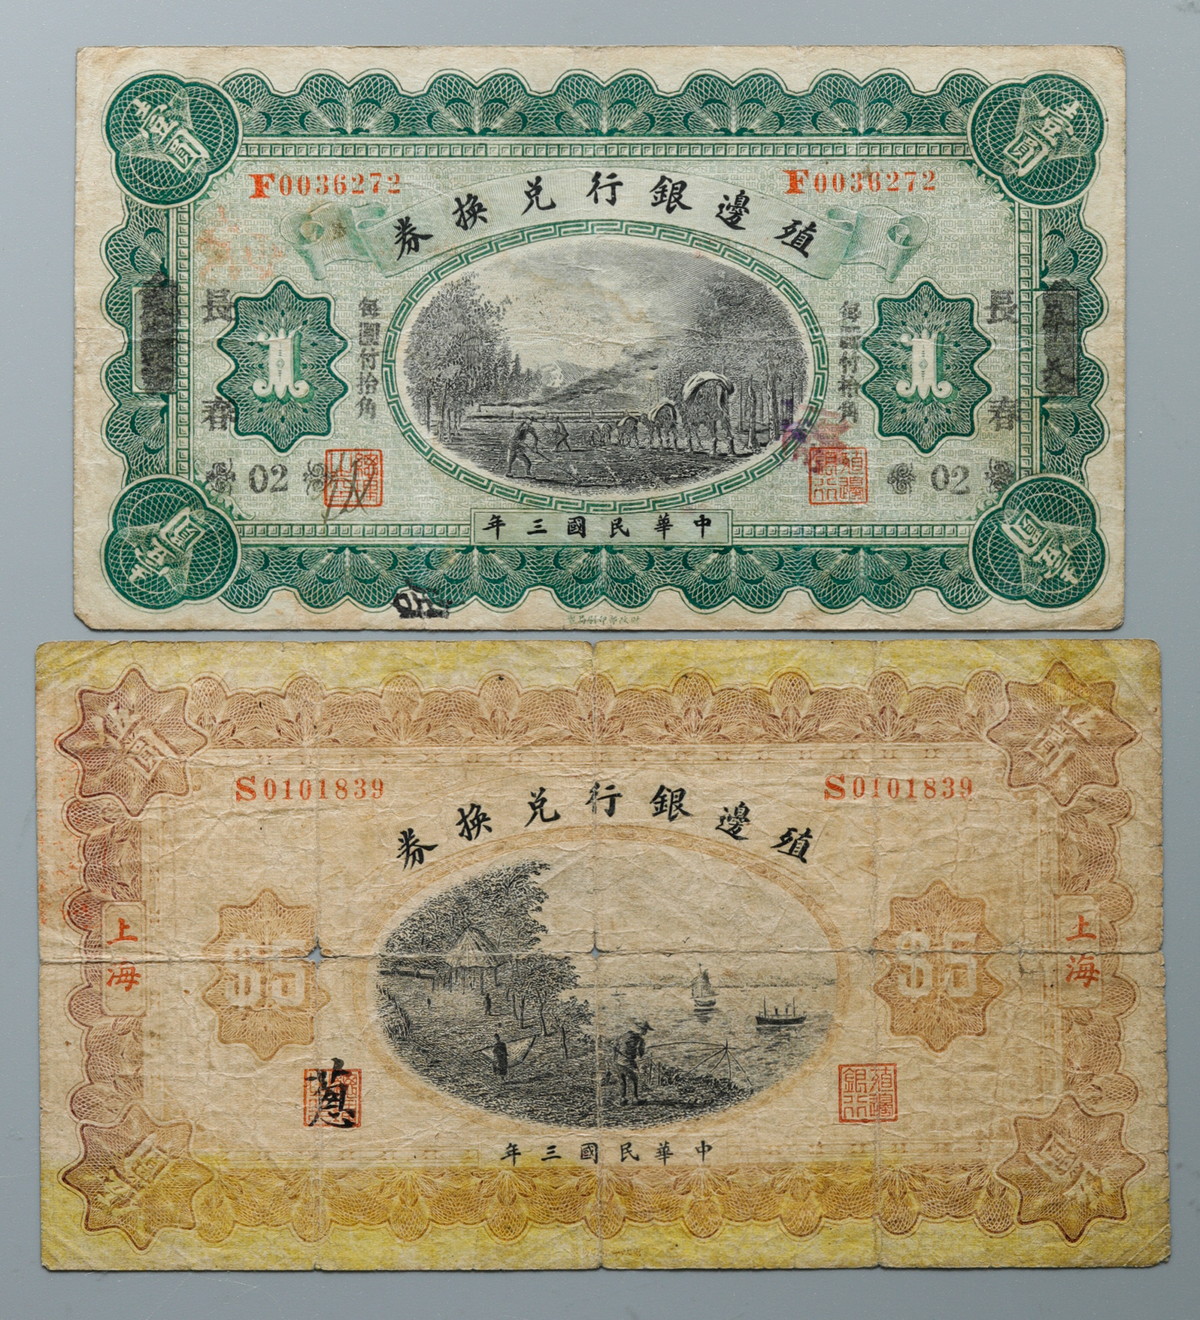 貨幣博物館 | 中国 中华民国三年 殖邊银行兑换券 壹元&五元 二枚セット